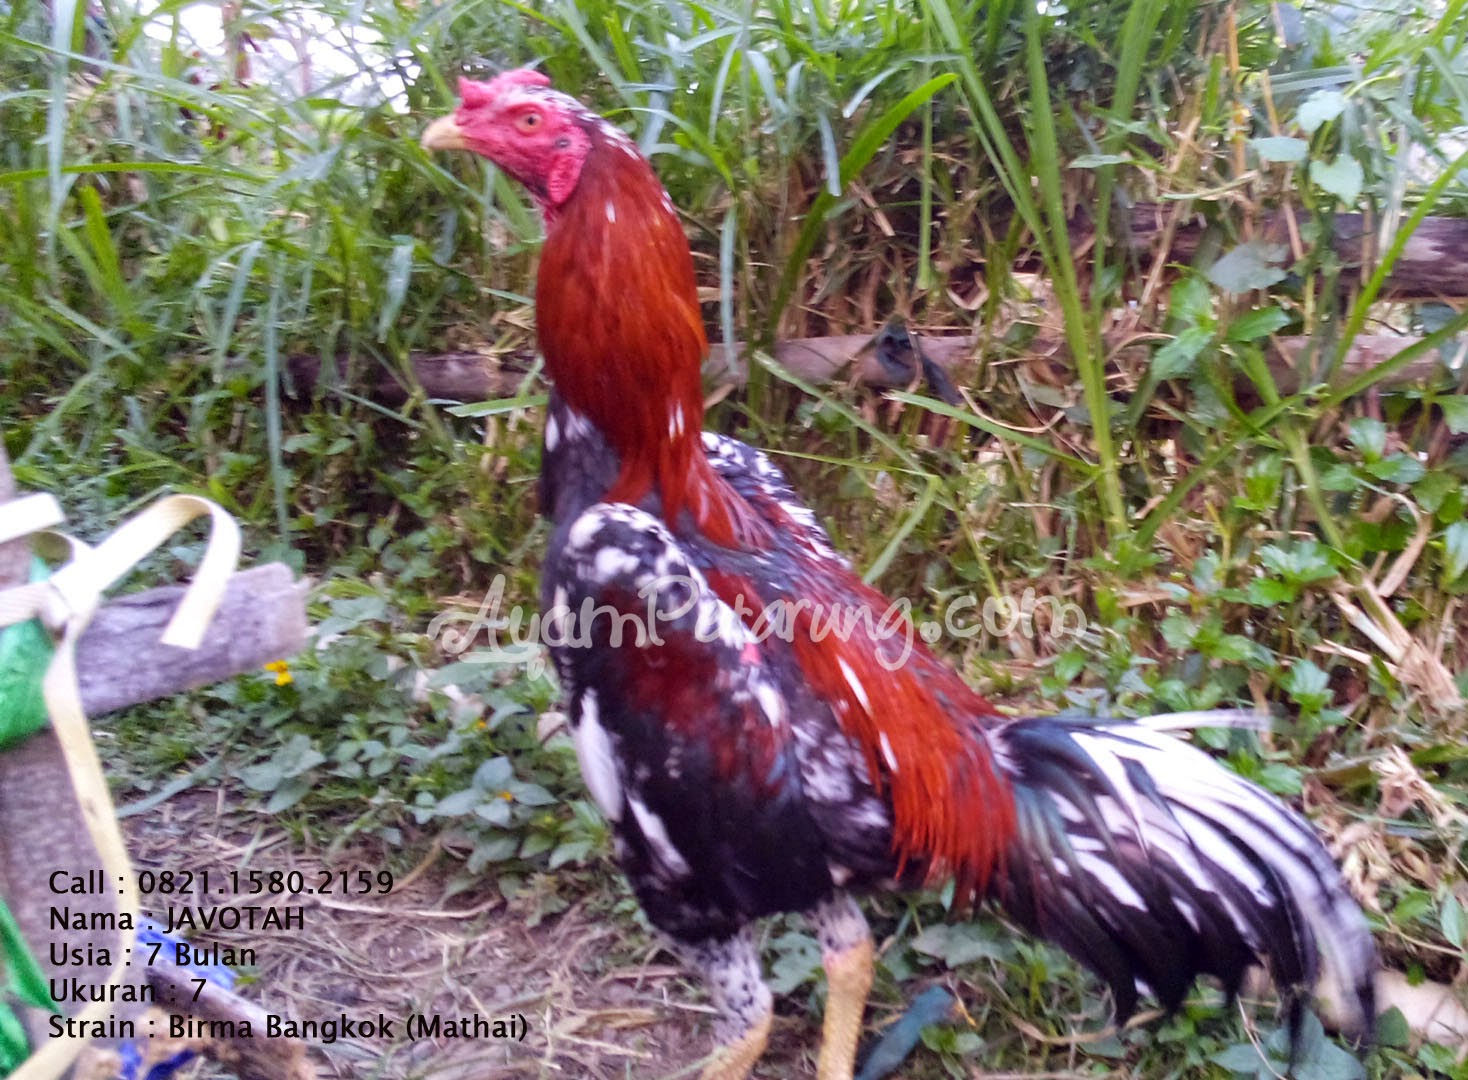  Gambar  Peternakan Ayam  Birma Kaisar Import  Gambar  Mathai 